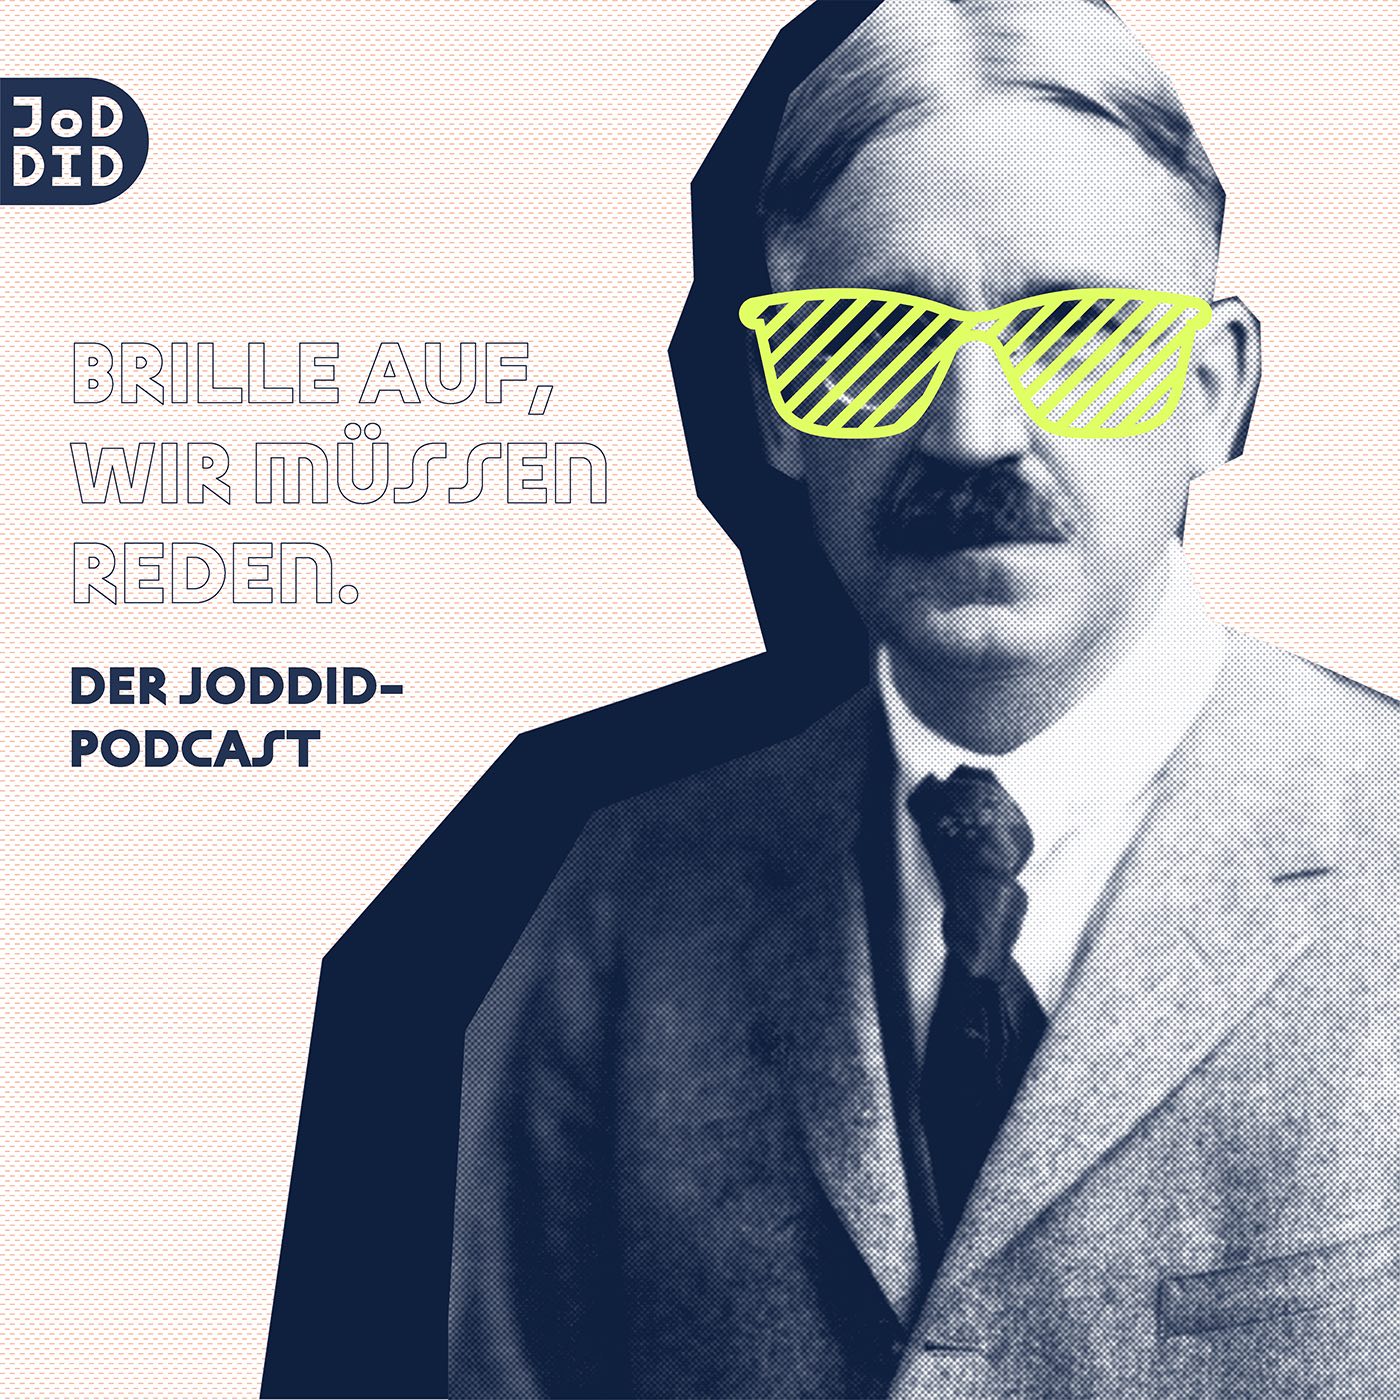 Brille auf, wir müssen reden! Der JoDDiD-Podcast